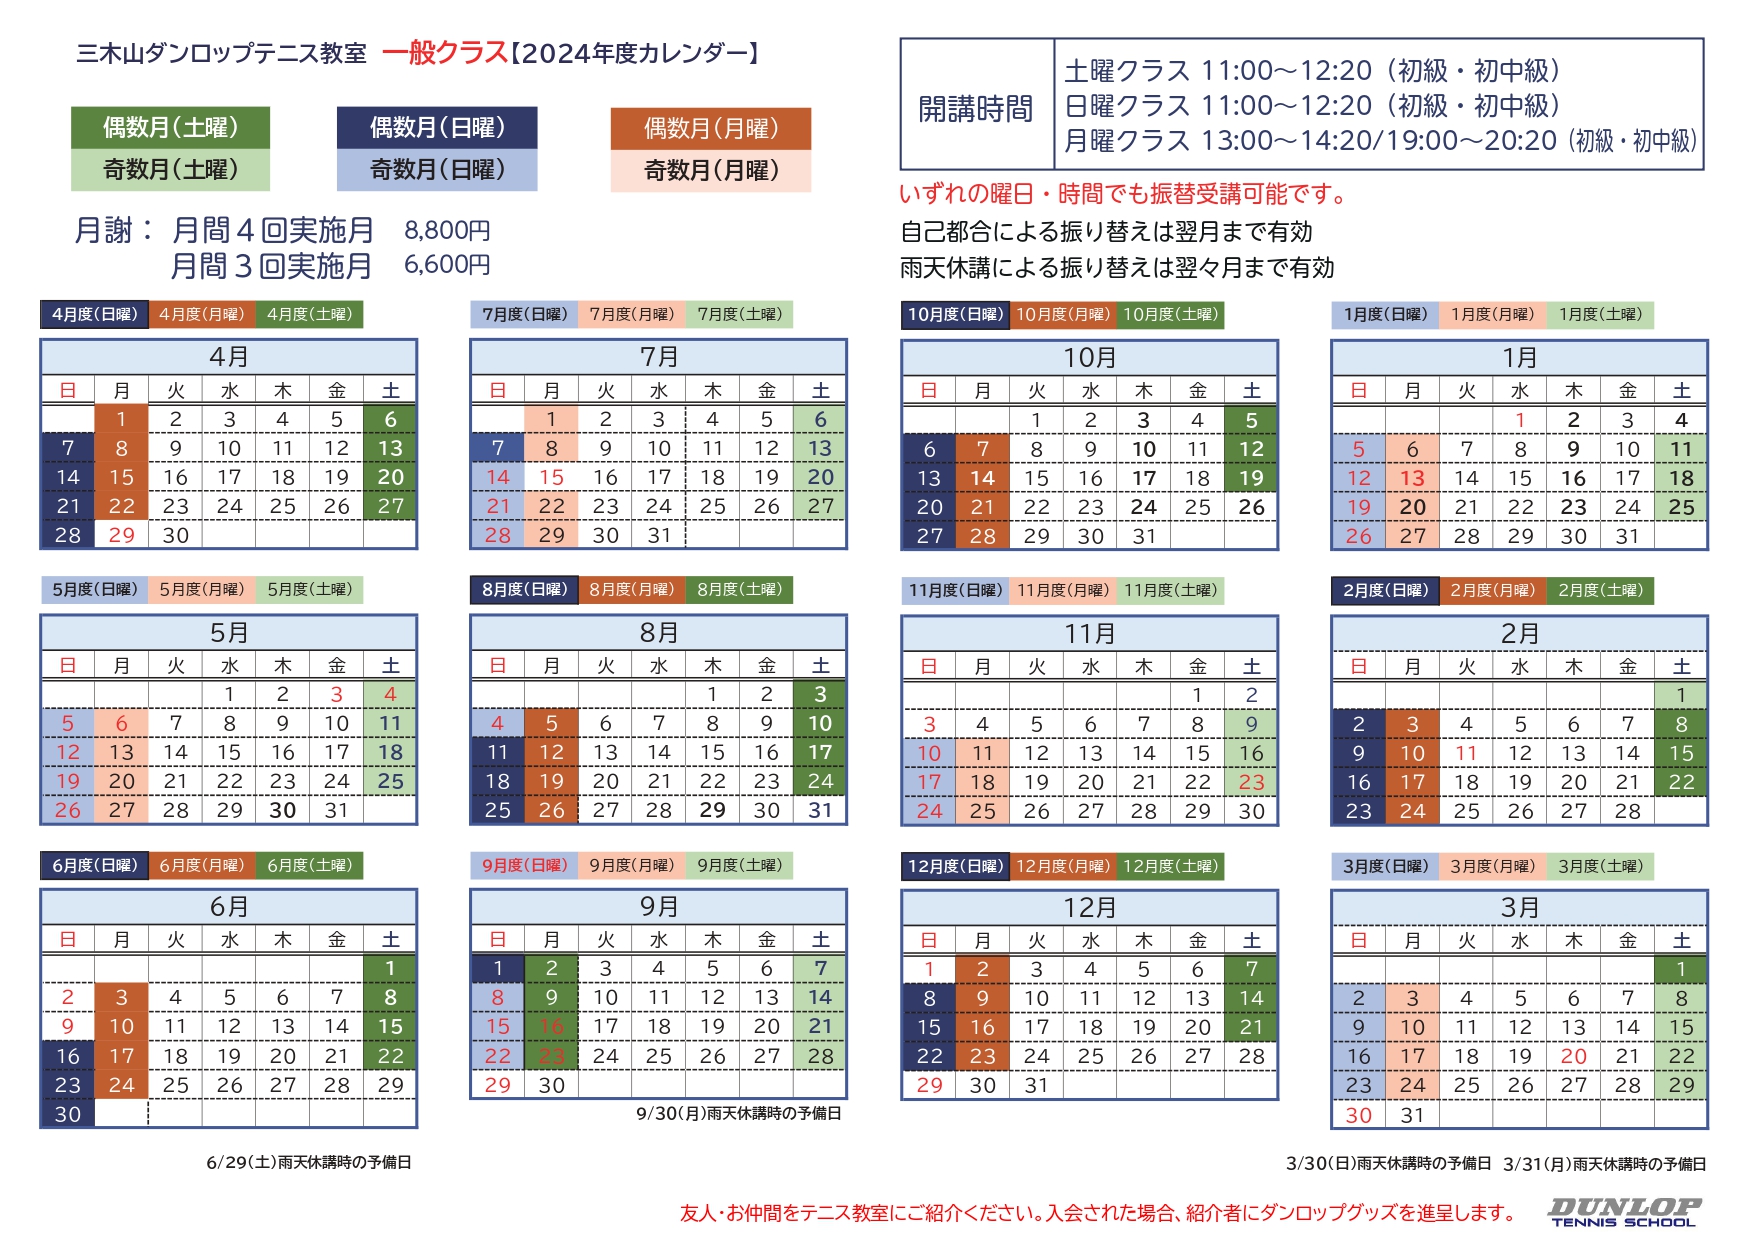 ダンロップテニススクール三木山 一般 日程表